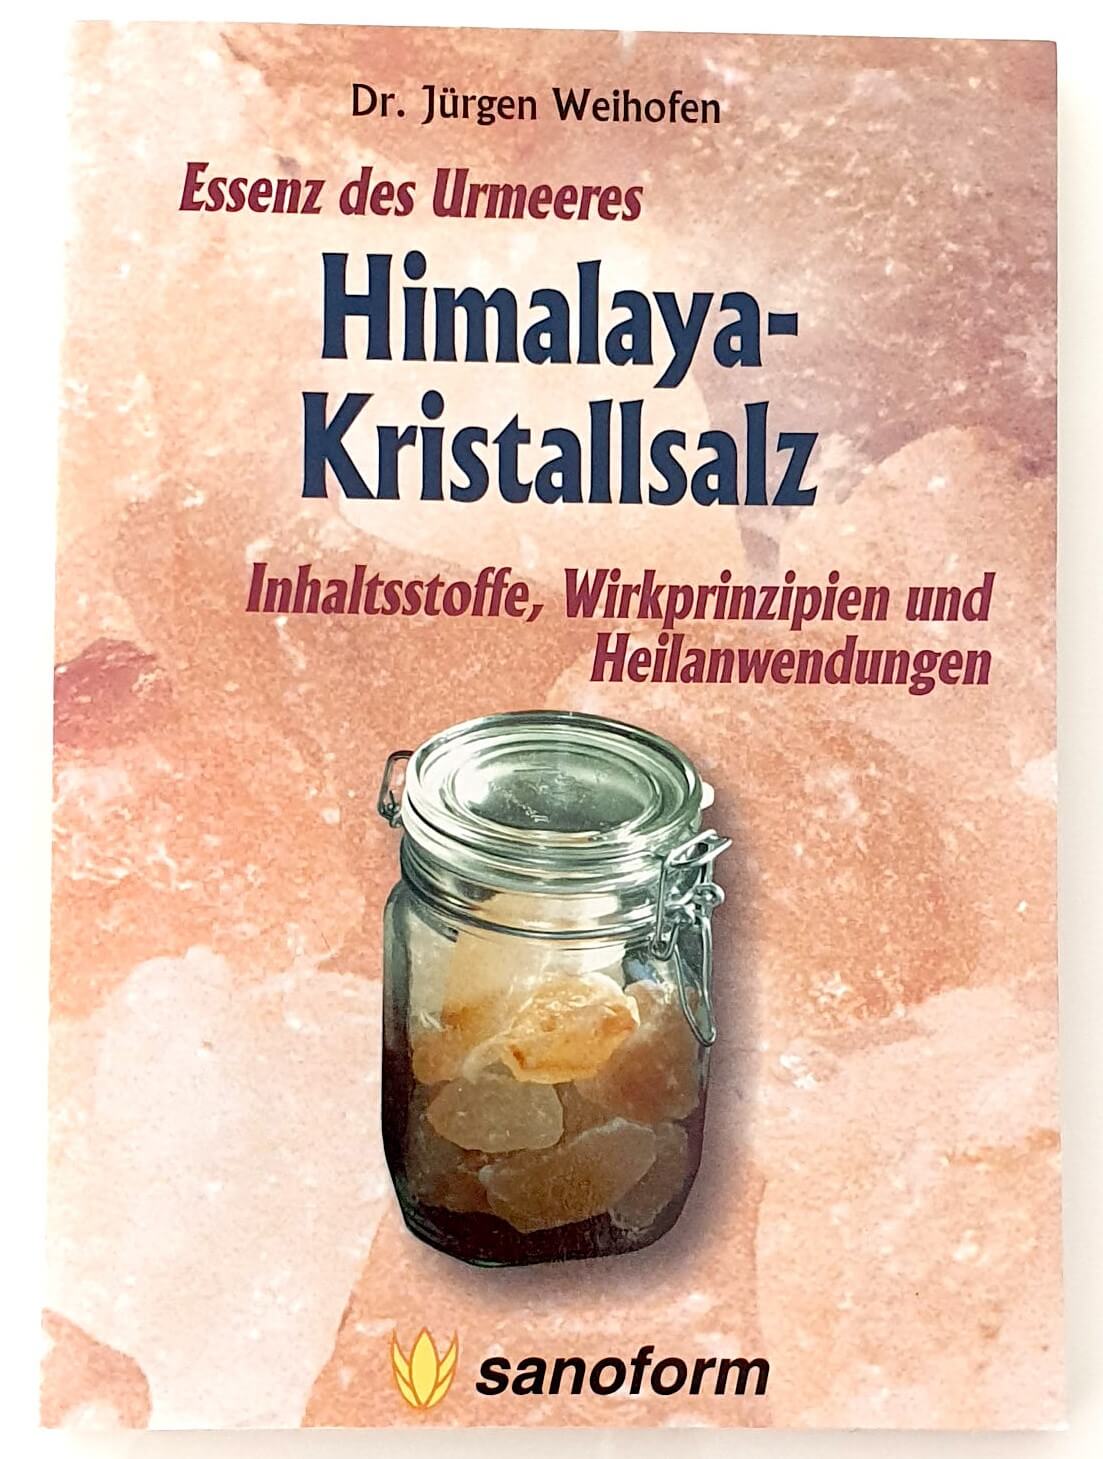 Himalaya-Kristallsalz - Essenz des Urmeeres - Inhaltsstoffe, Wirkprinzipien und Heilanwendungen von Dr. Jürgen Weihofen